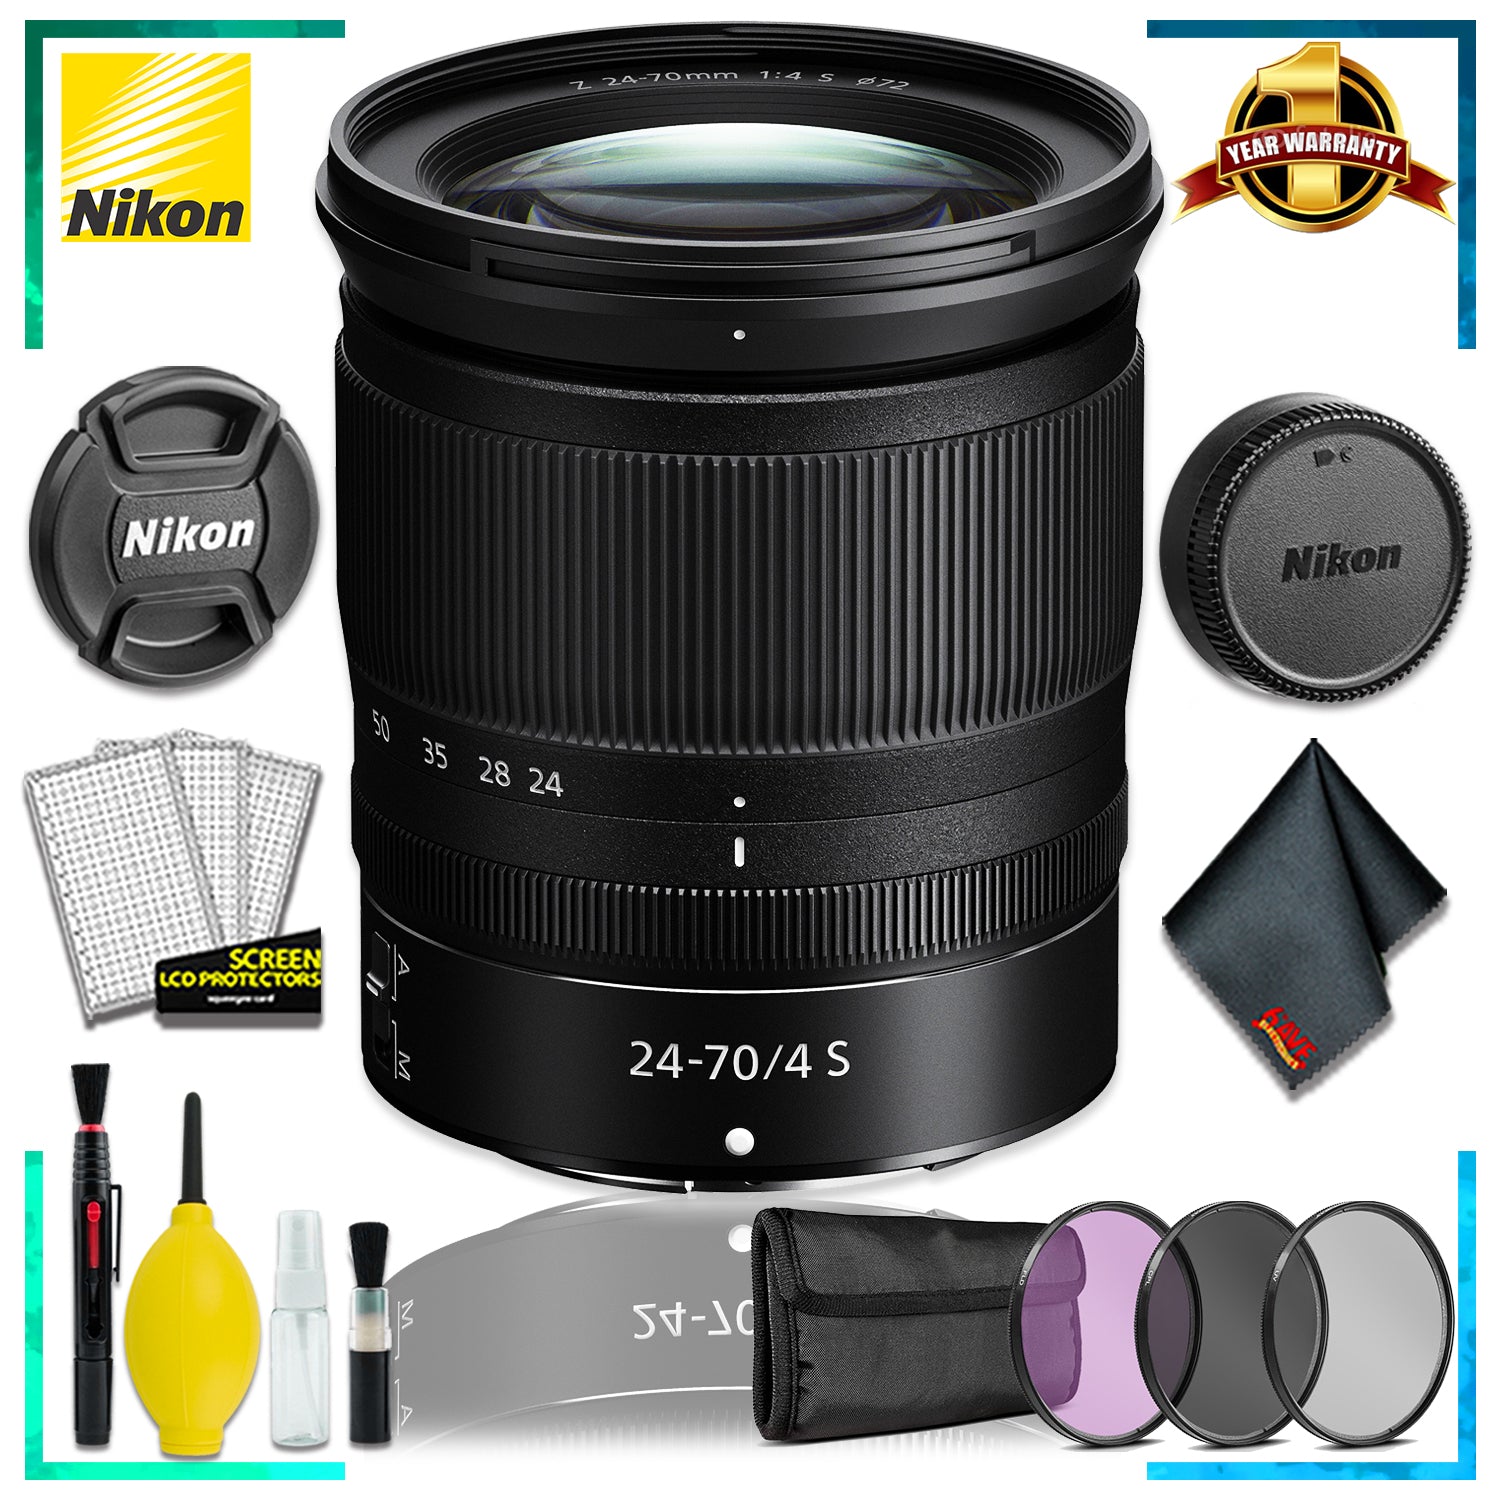 Nikon NIKKOR Z 24-70mm f.4 S Lens (Intl Model) + 3pcs Lens Filter Kit + Cleaning Kit